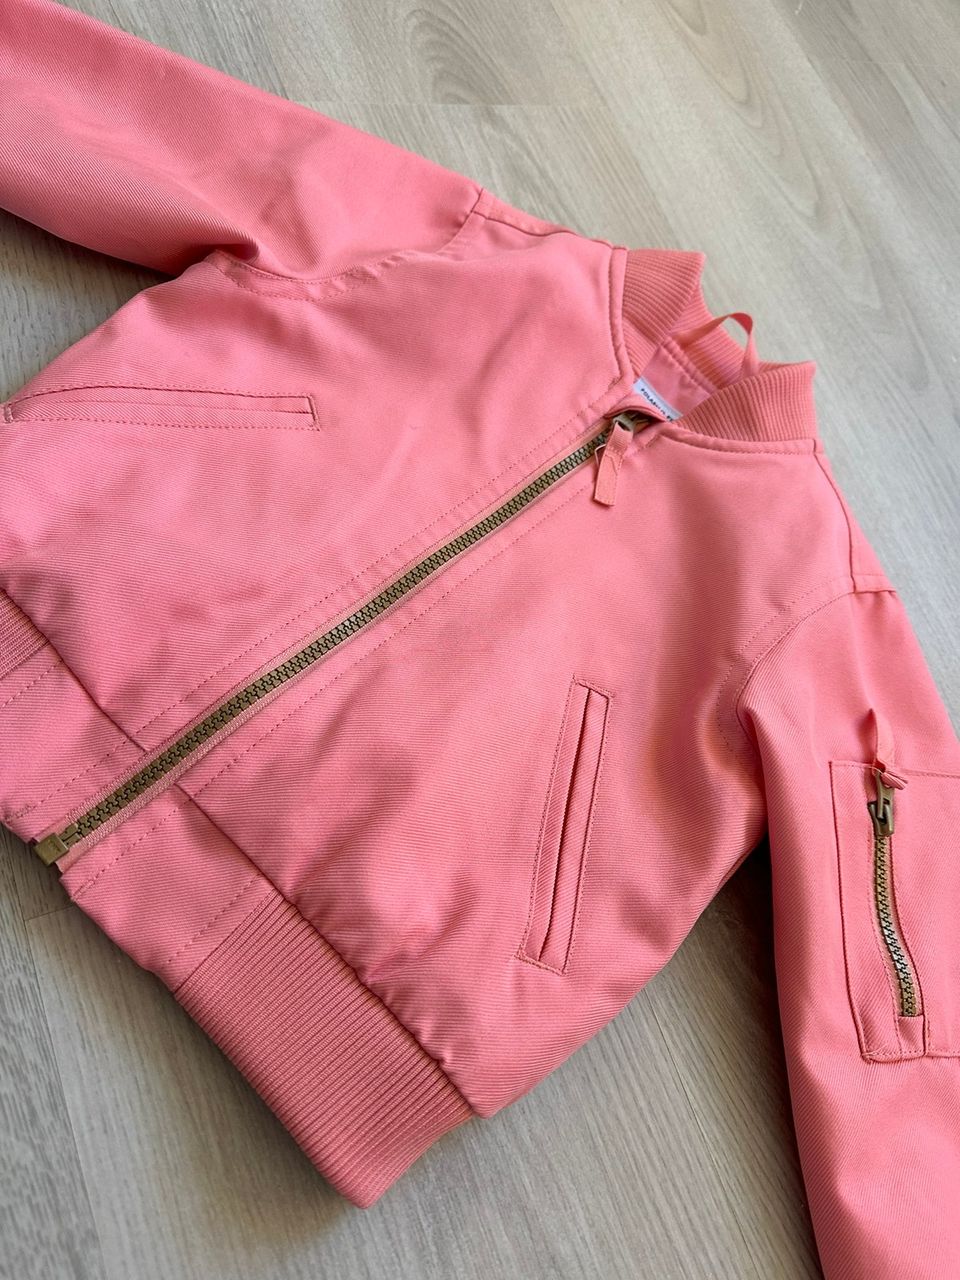 Polarn Pyret takki, vaaleanpunainen, 98 cm